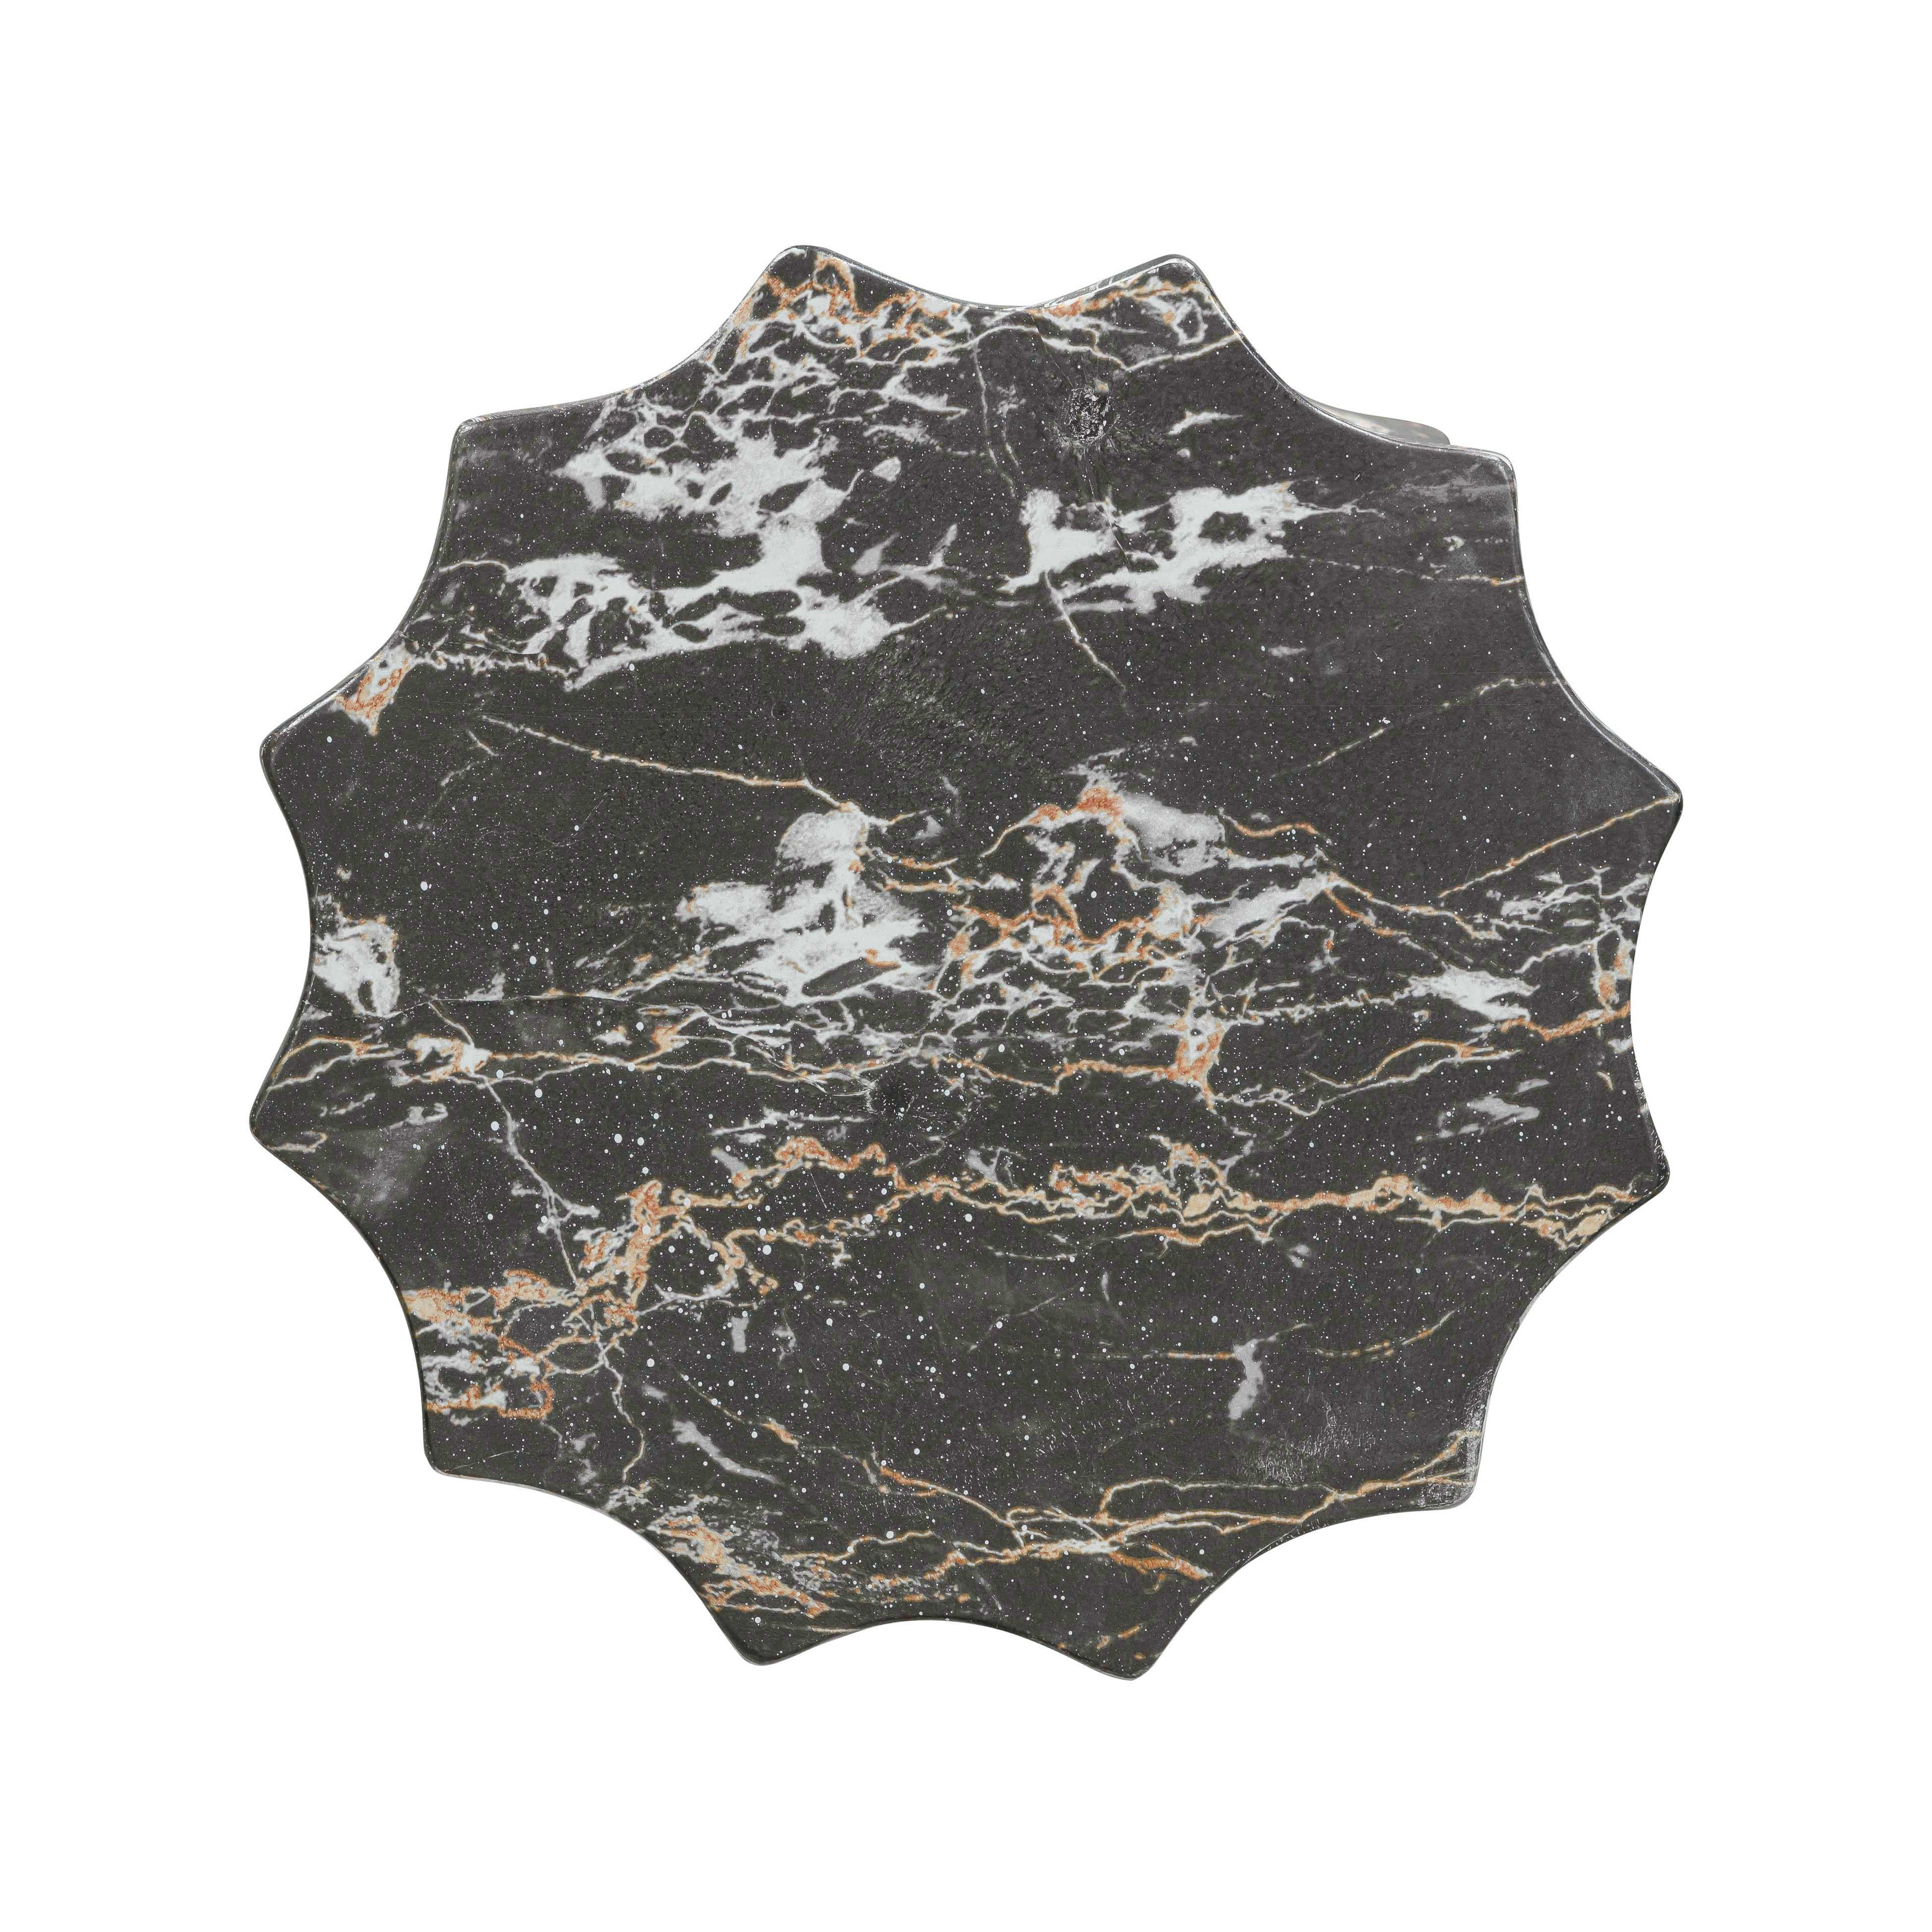 Mesa lateral de concreto imitación mármol negro Xococ superficie.